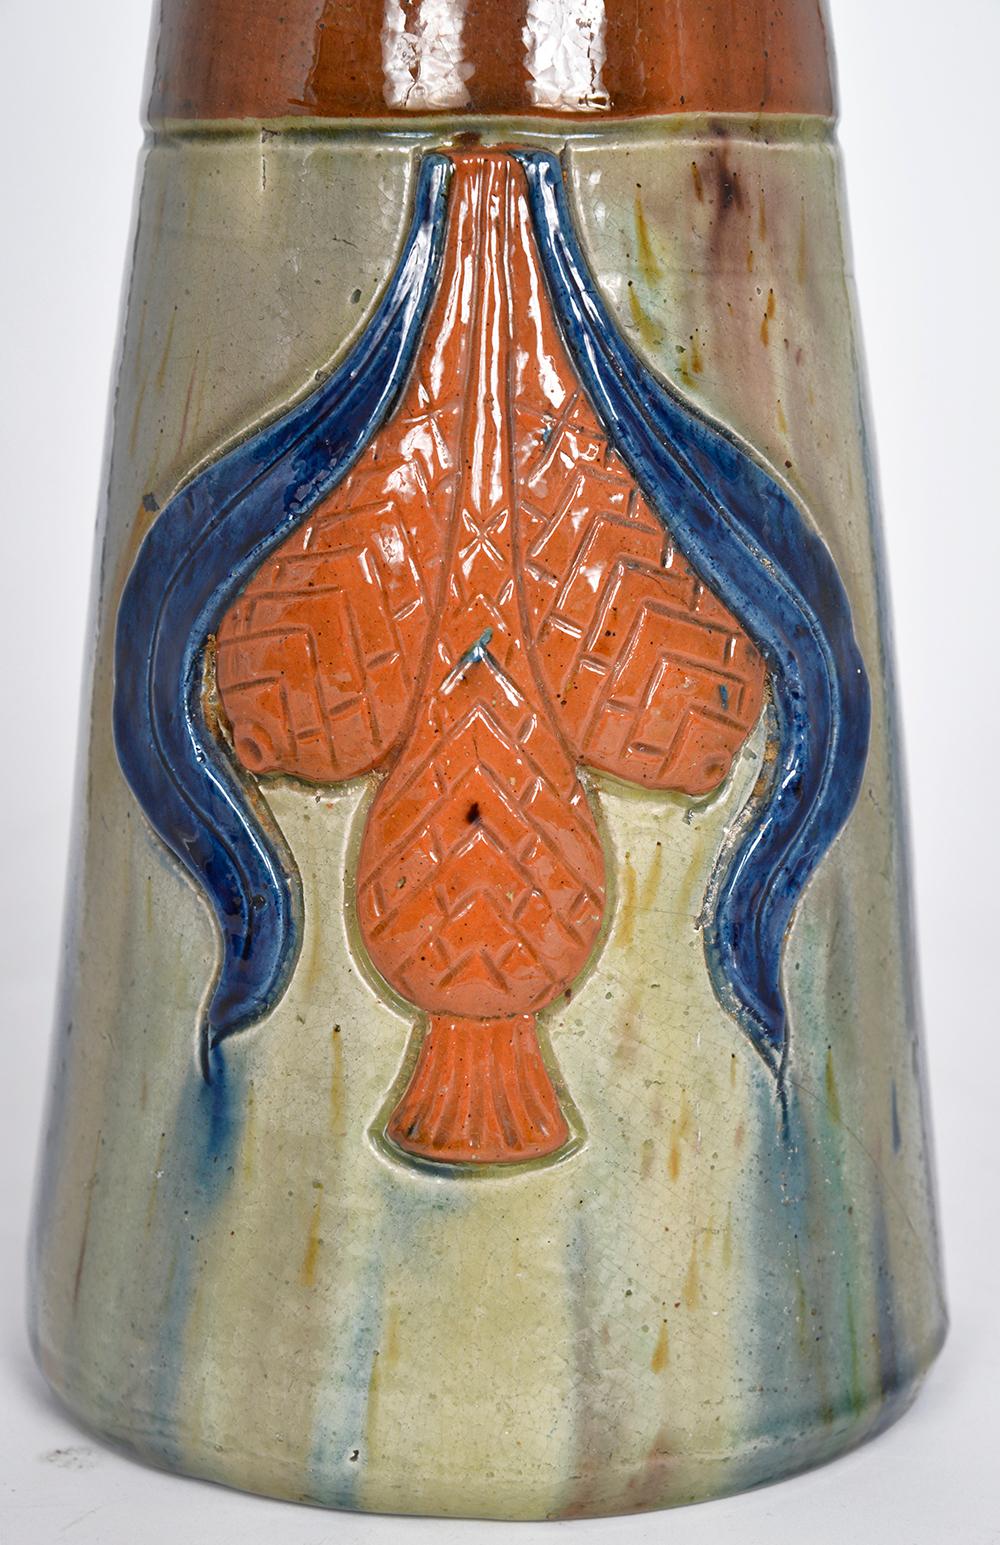 Flemish Studio Pottery Art Nouveau Drip Glazed Earthenware Vase 1900s Folk Art For Sale 3